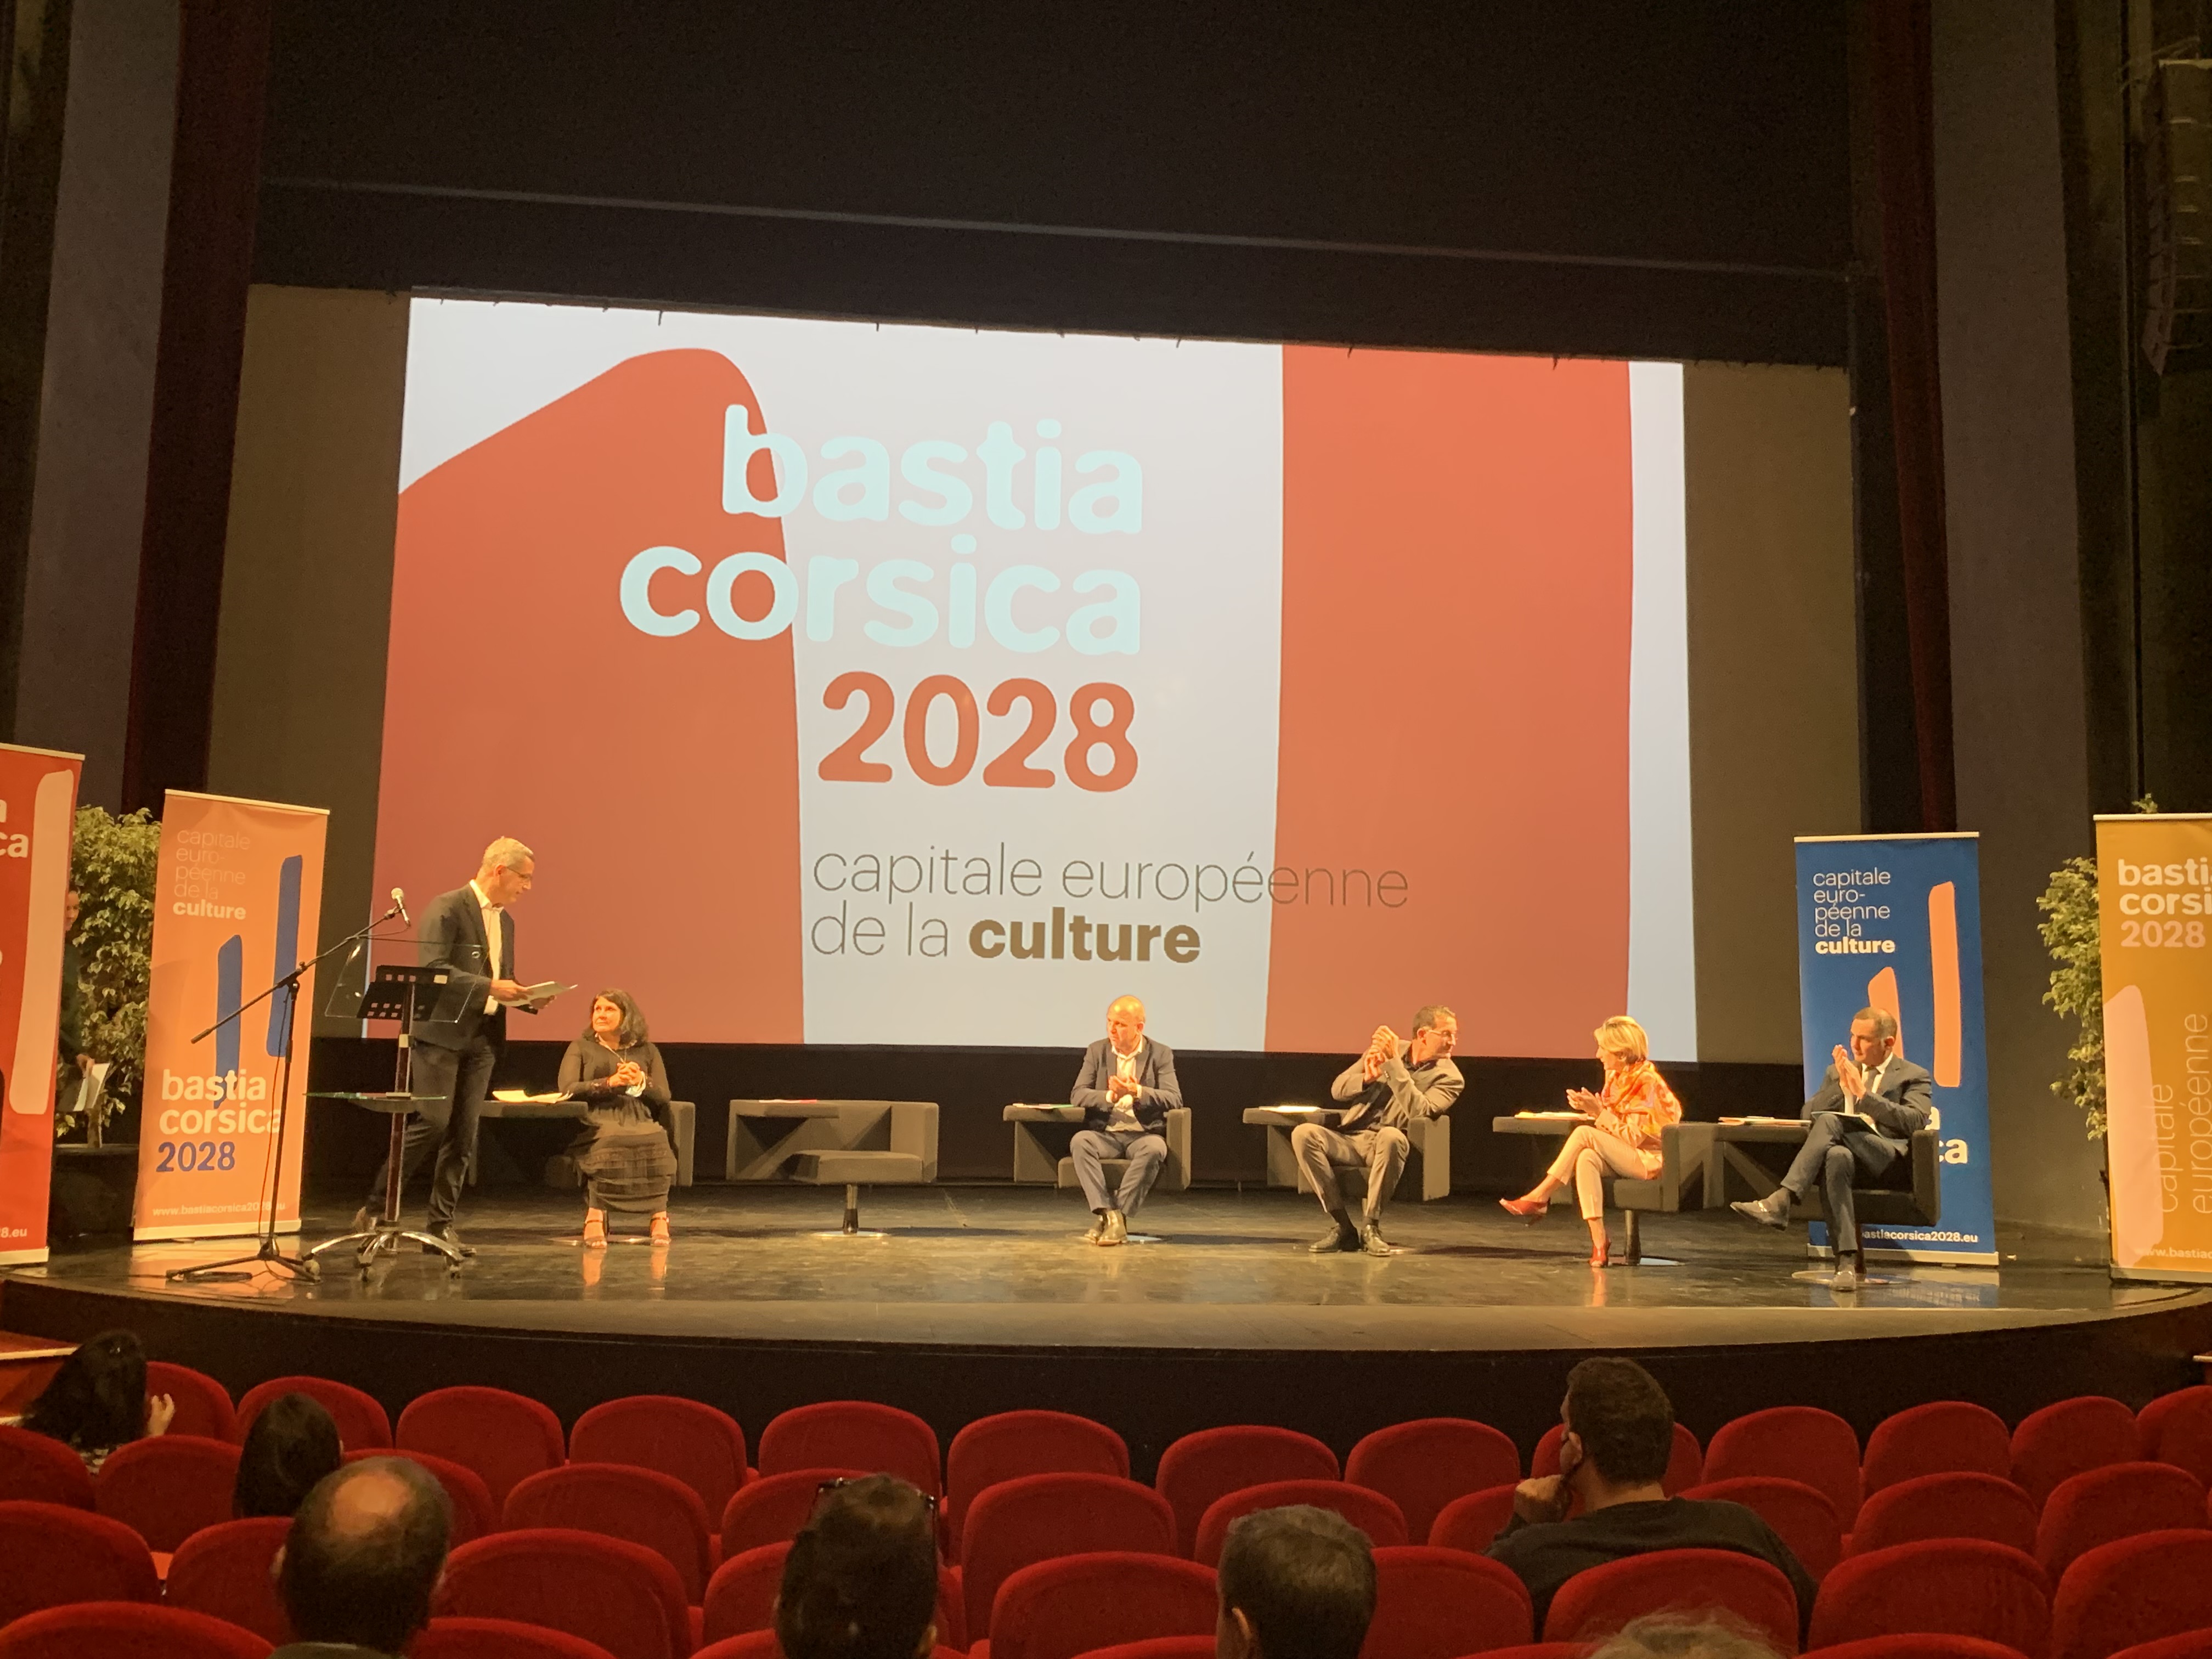 La mairie de Bastia présentait officiellement sa candidature pour tenter d'obtenir en 2028, le label de capitale européenne de la culture